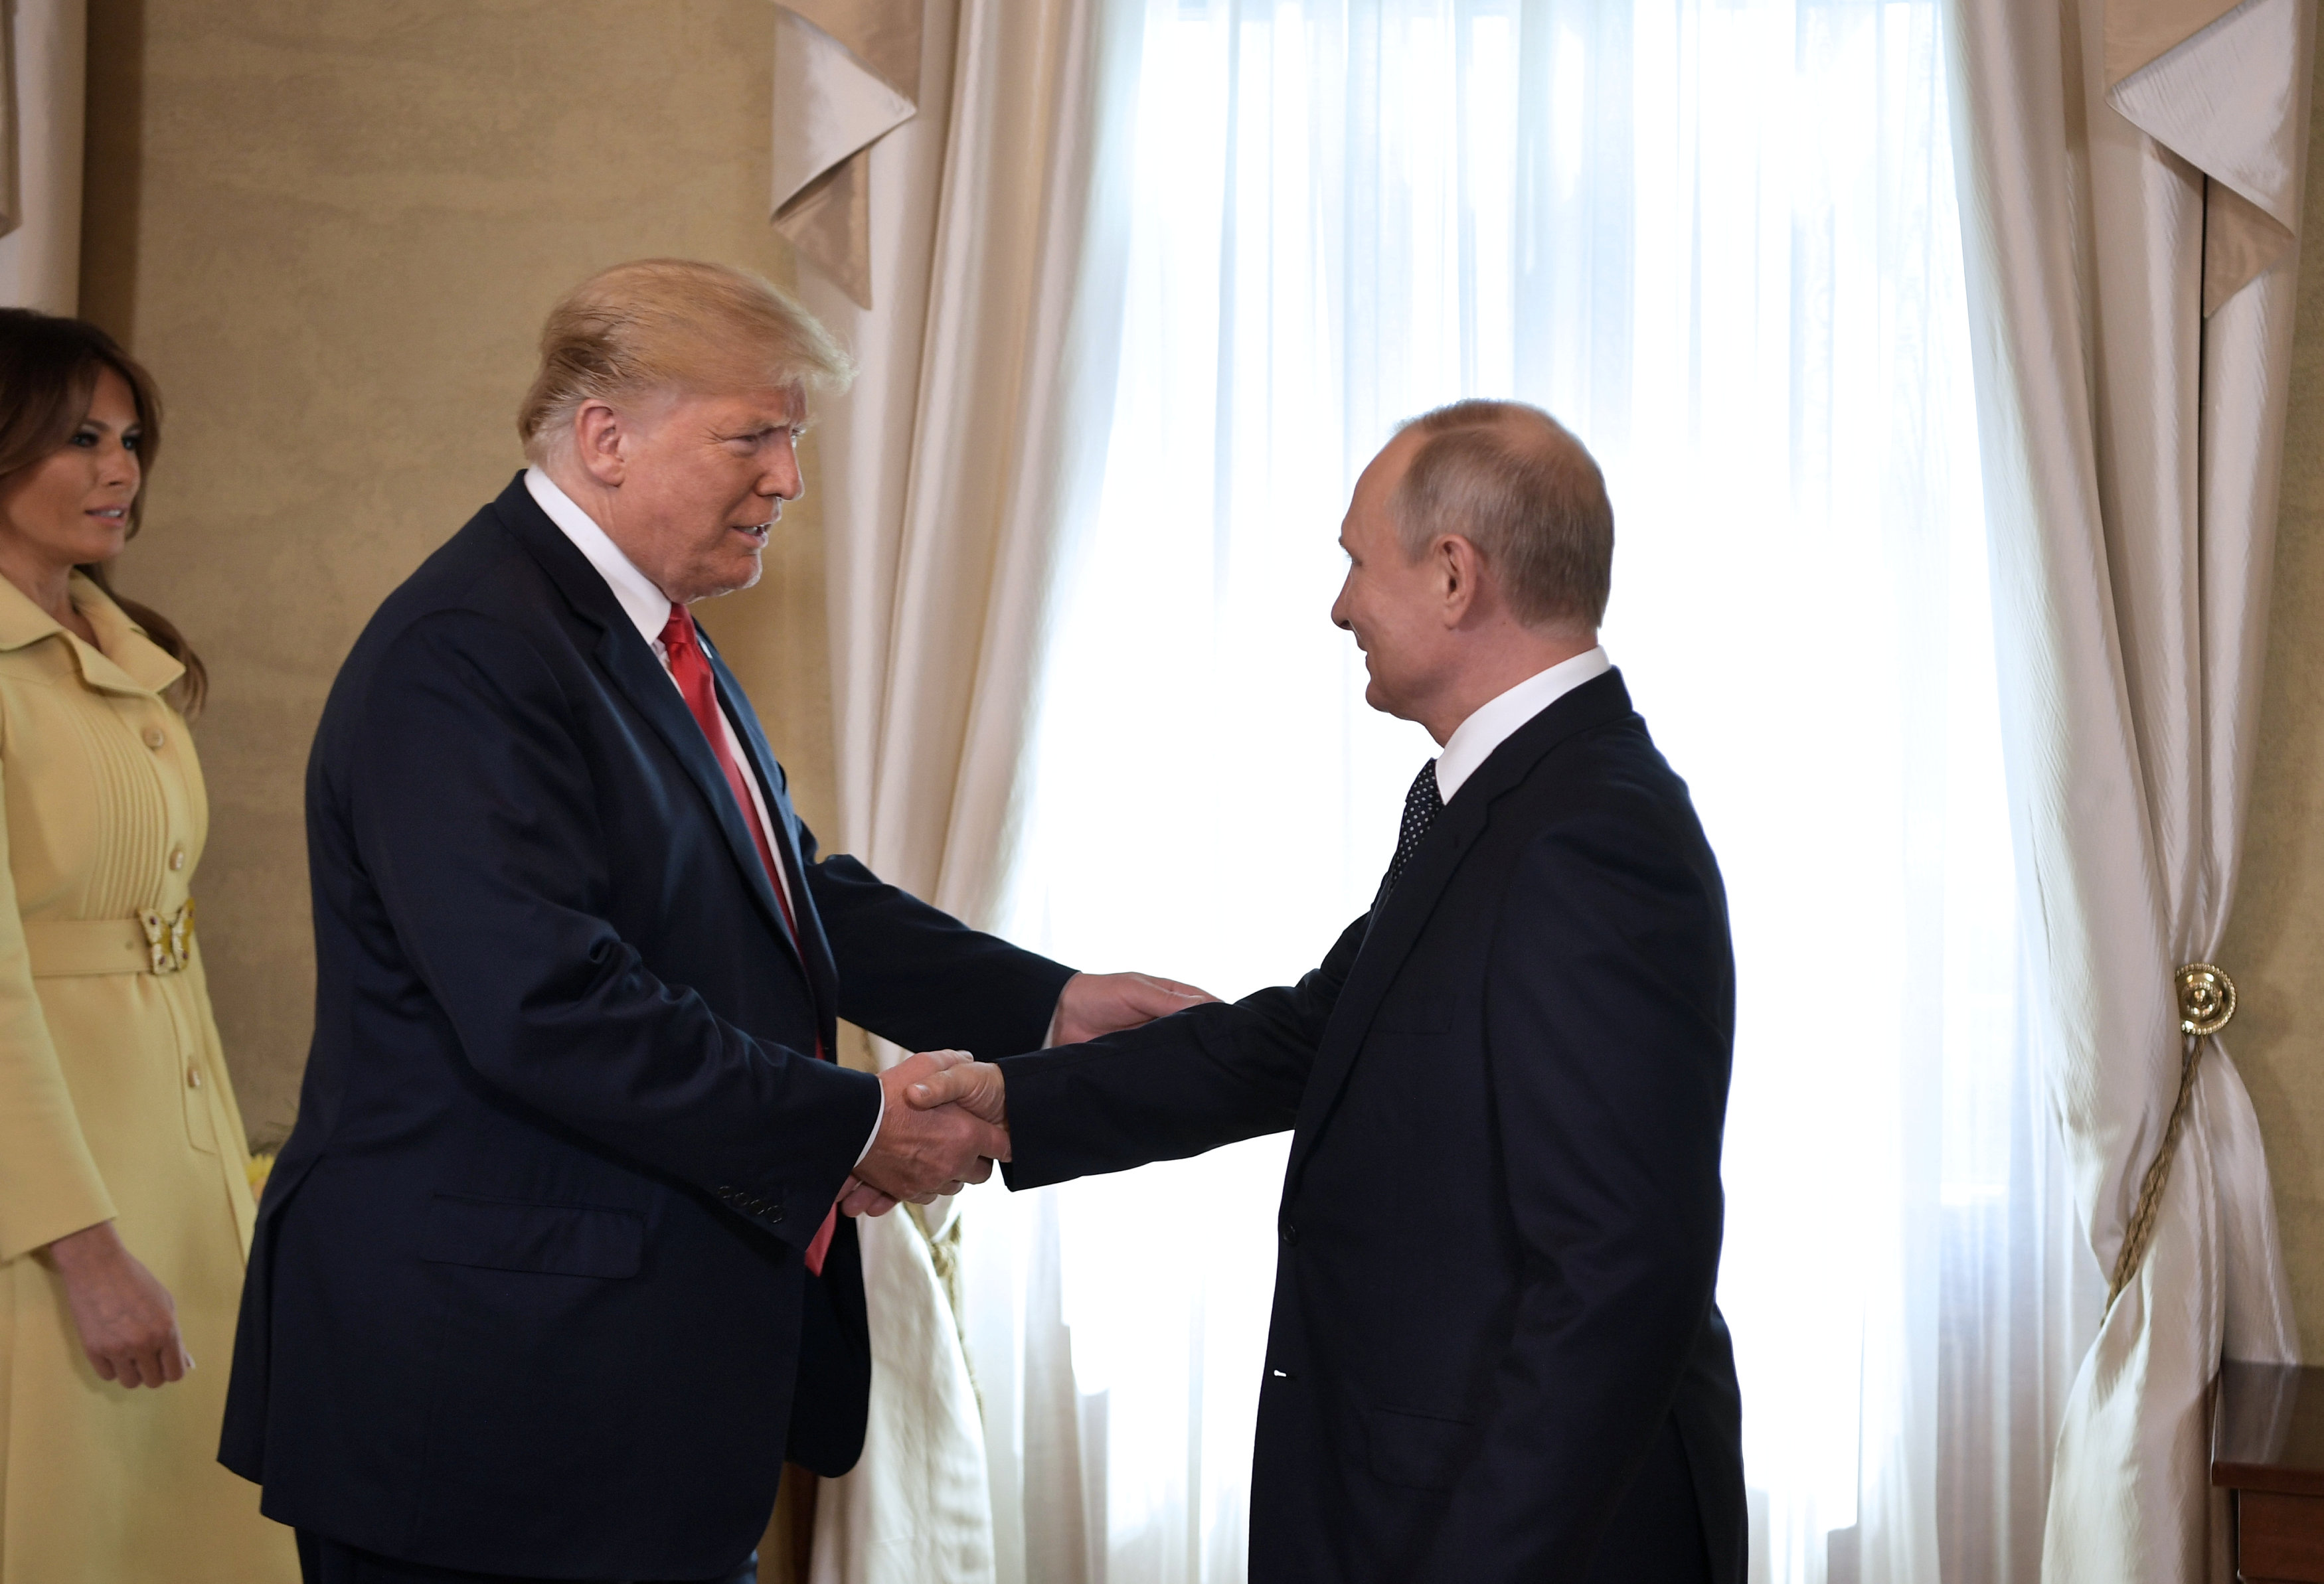 الرئيس الأميركي دونالد ترامب إلى جانب الرئيس الروسي فلاديمير بوتين في قمة هلسنكي. 16 يوليو 2018. اليكسي نيكولسكي/ رويترز 